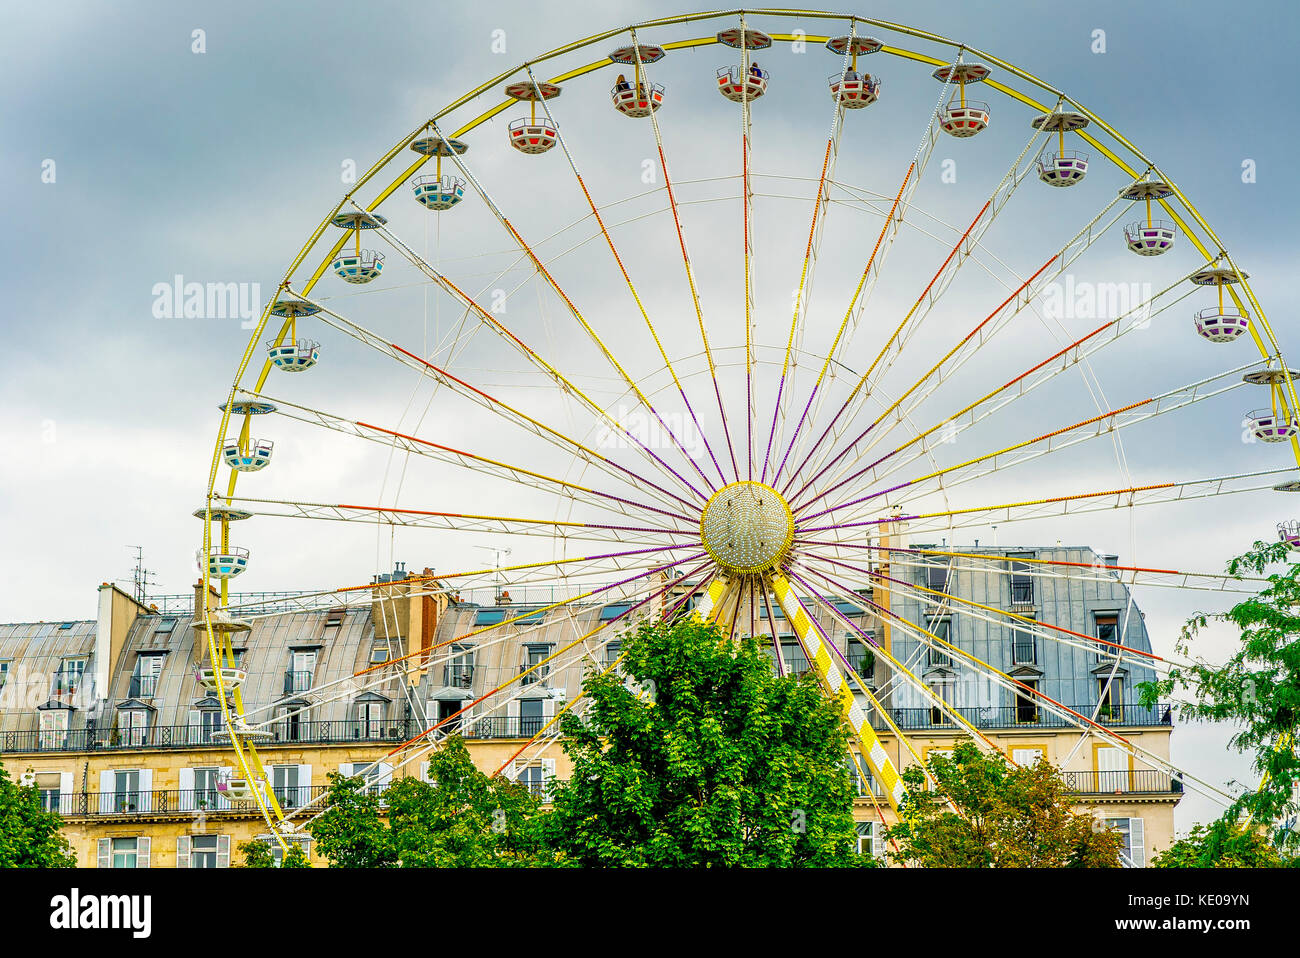 Fete de Tuileries all'interno del giardino delle Tuileries in una giornata torbida a Parigi, in Francia Foto Stock